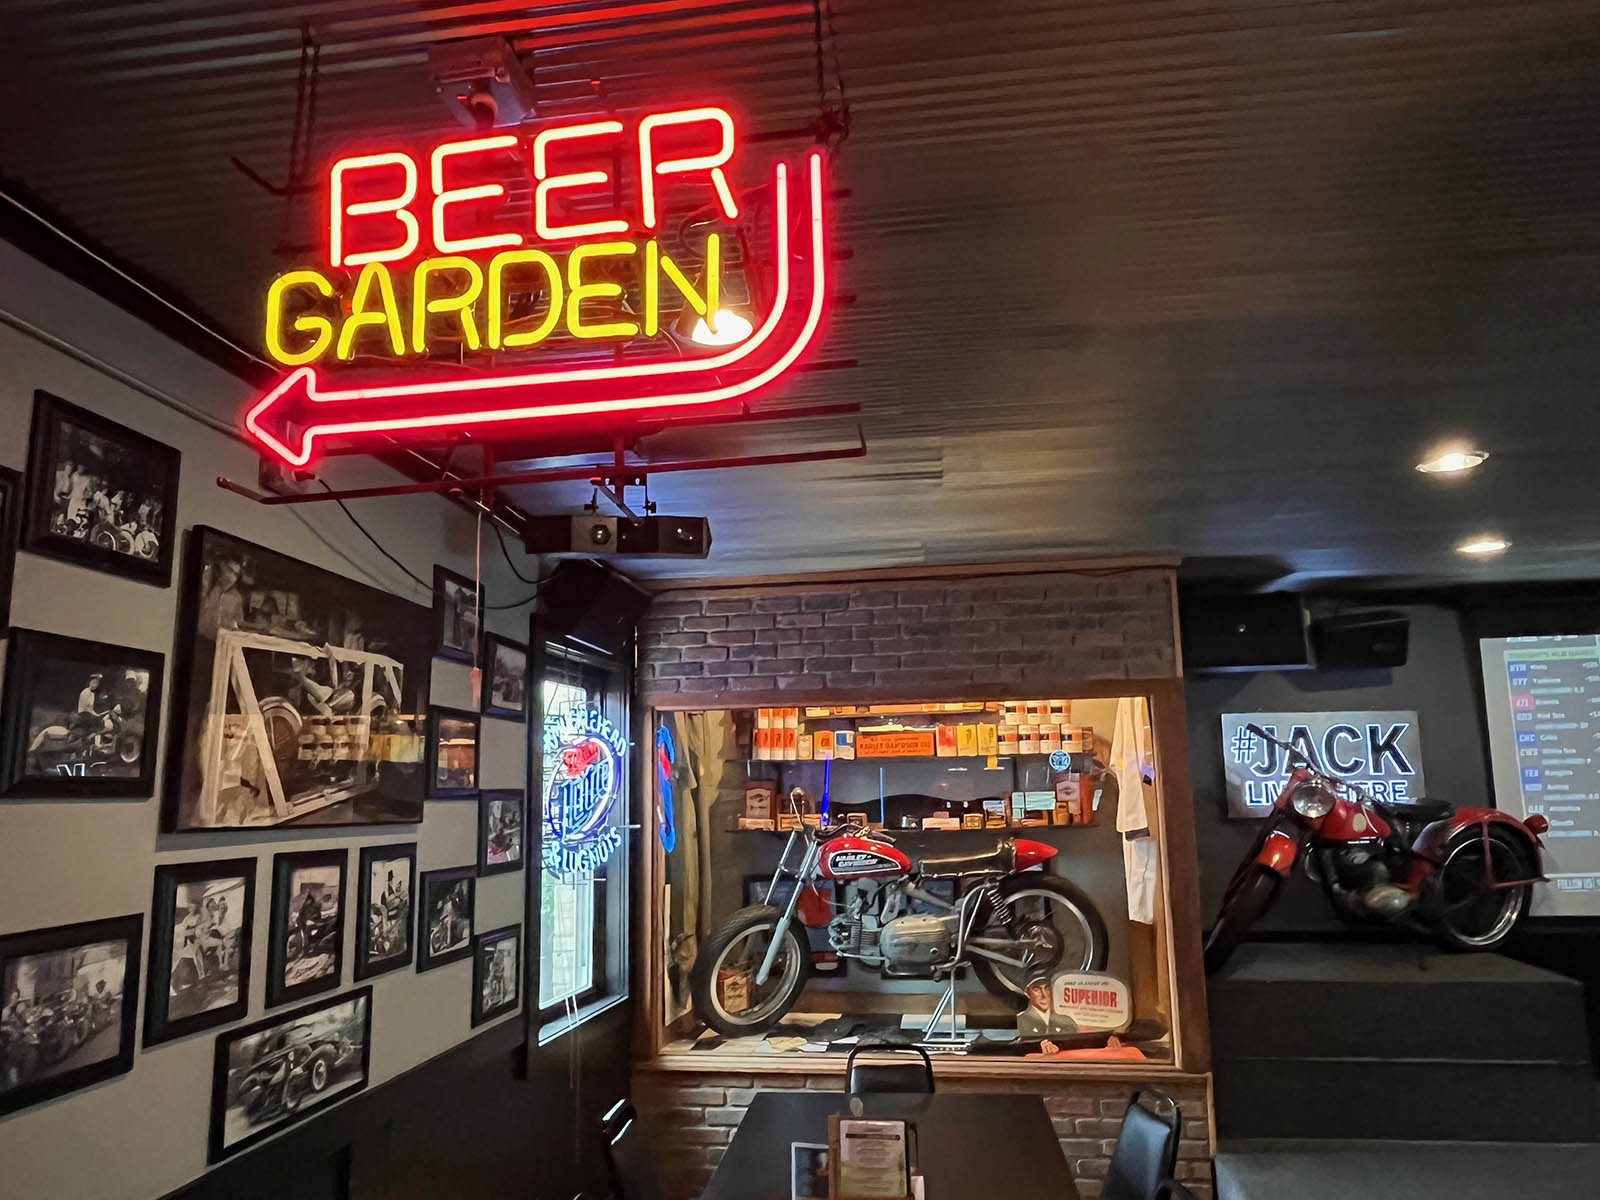 Beer garden neon